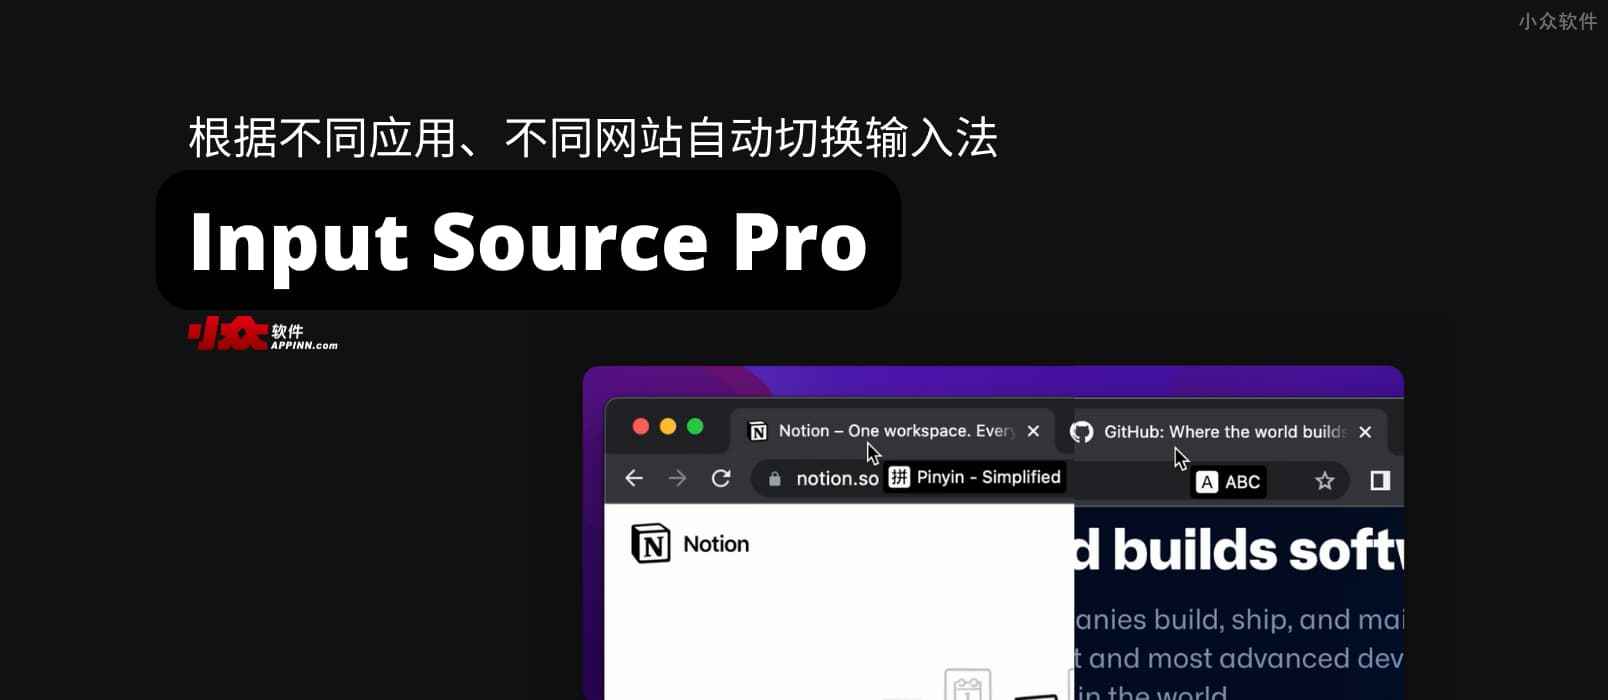 Input Source Pro – 根据不同应用、不同网站自动切换输入法，并提示当前输入法状态[macOS]